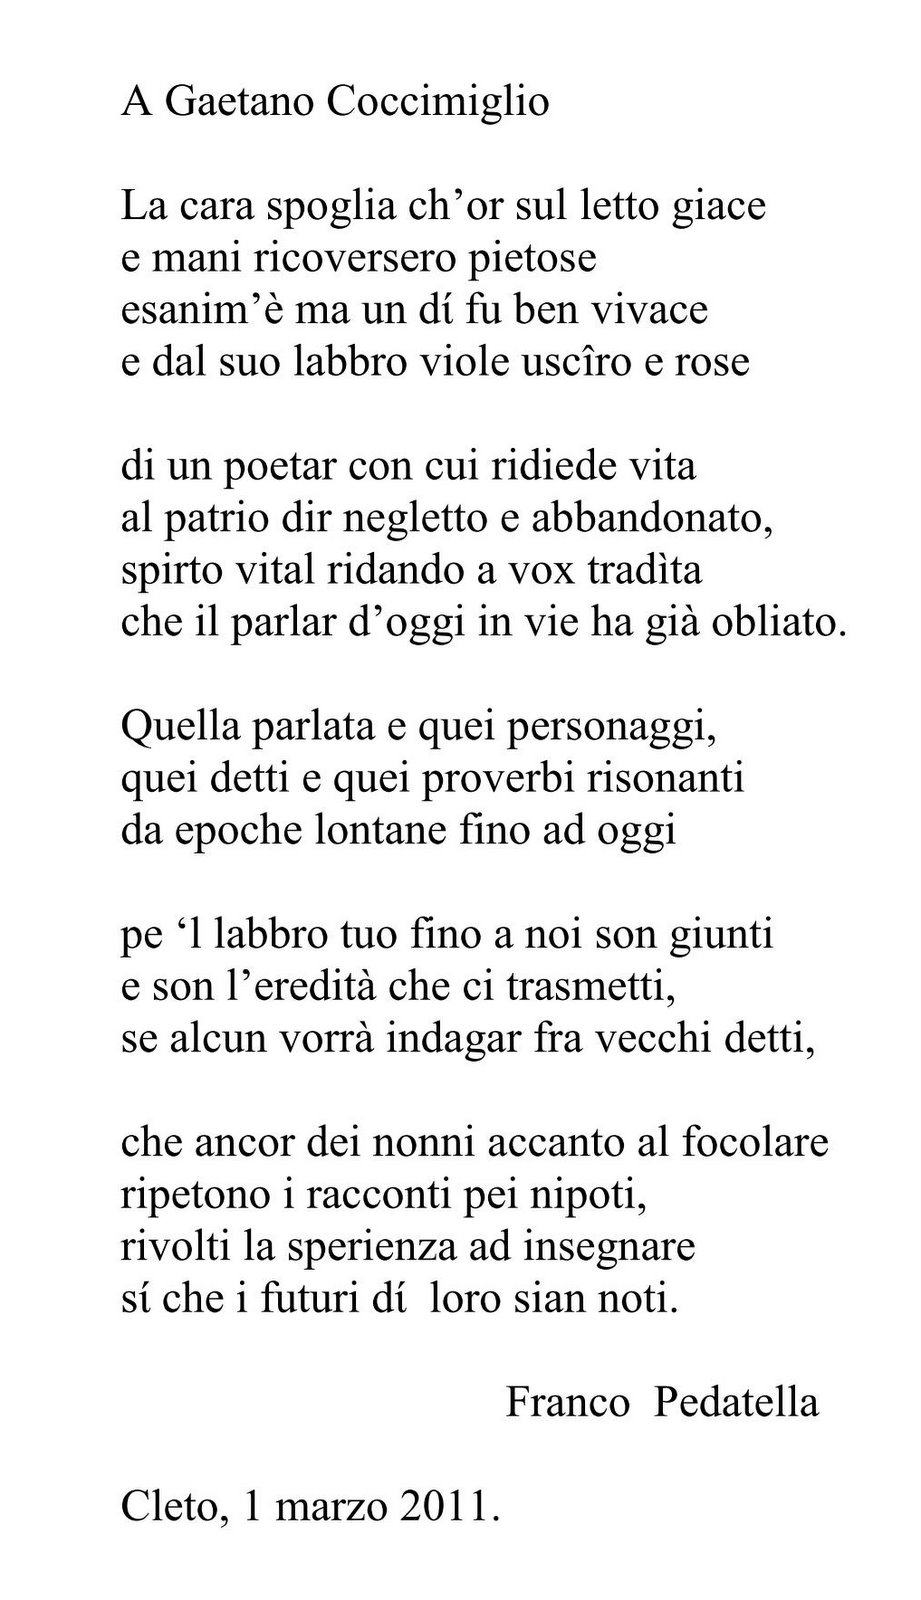 Poesia a Gaetano Coccimiglio 